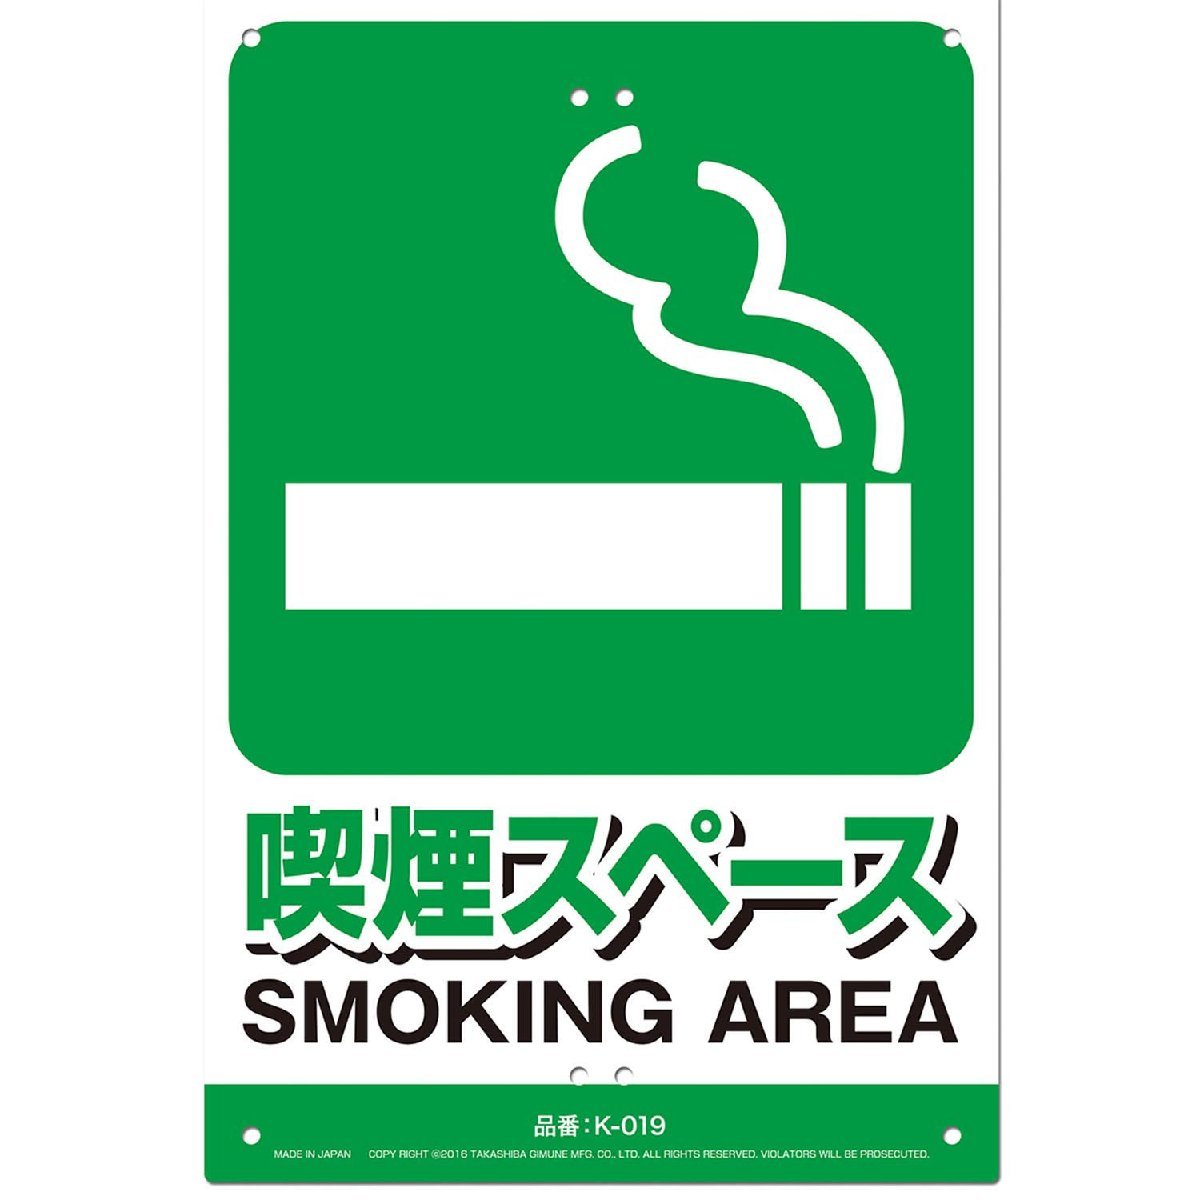  безопасность опознавательный знак табличка - курение Space Miki Logo s поддержка сопутствующие товары безопасность сопутствующие товары отражающий наклейка K-019